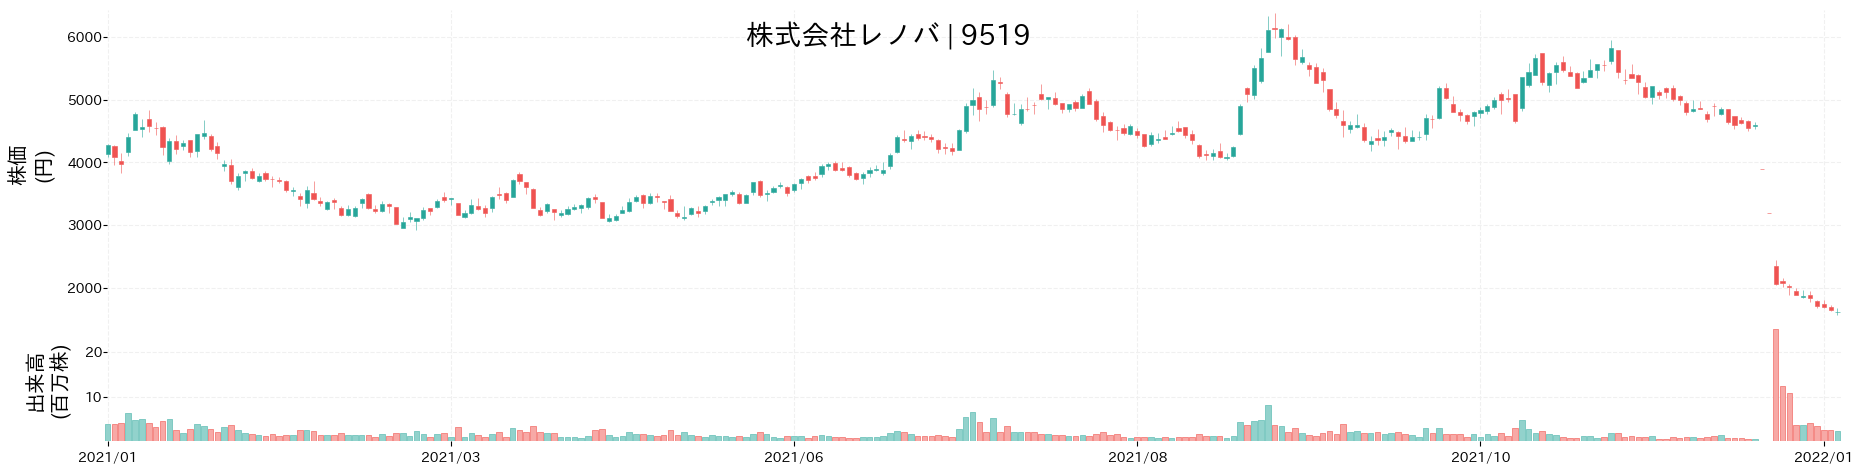 レノバの株価推移(2021)